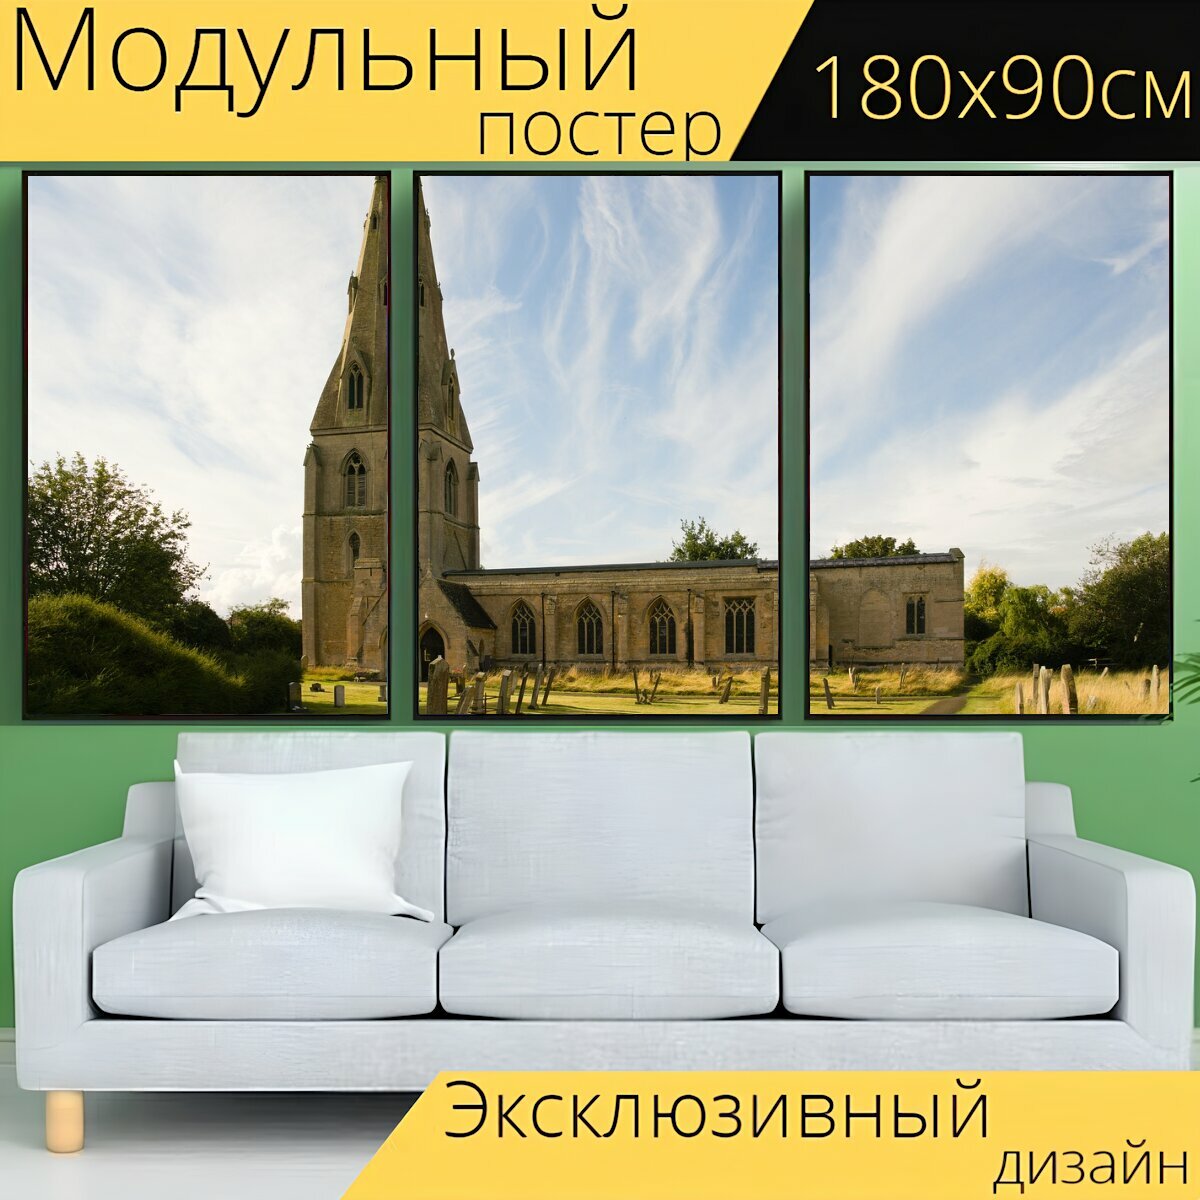 Модульный постер "Церковь, кафедральный собор, архитектуры" 180 x 90 см. для интерьера